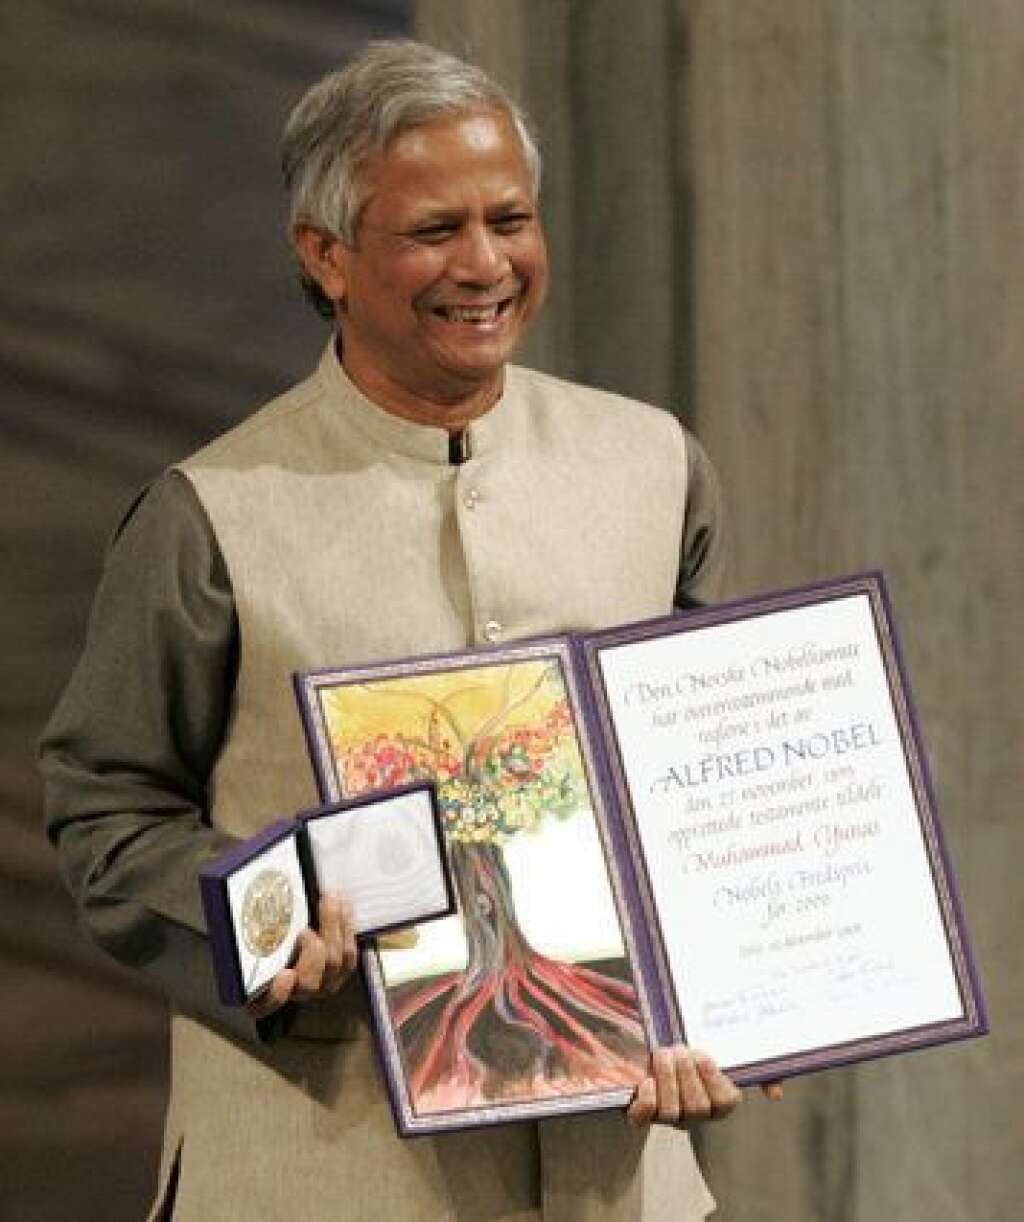 2006 - Muhammad Yunus et la banque Grameen Bank (Bangladesh) - "Pour leur participation au développement important du principe du microcrédit".